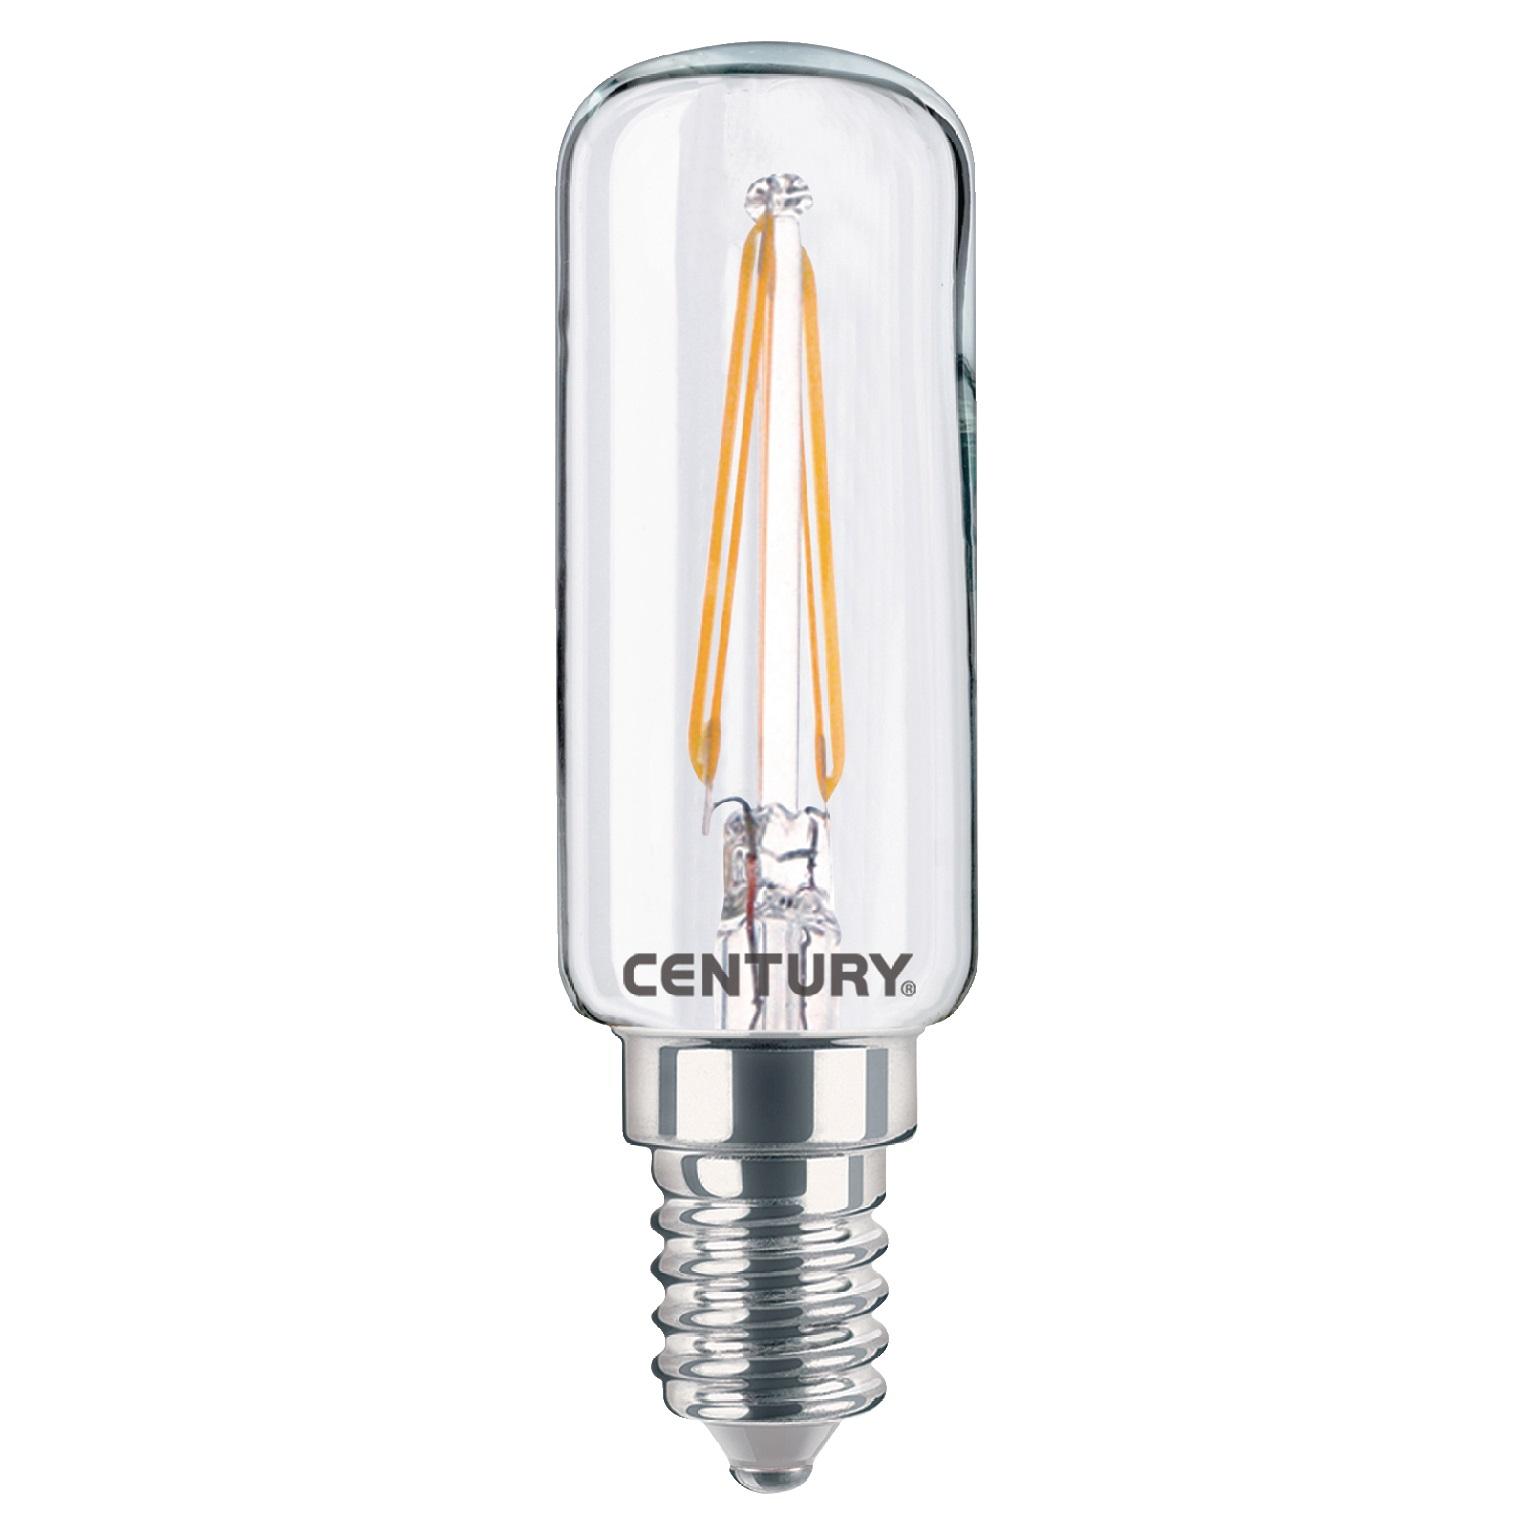 Image of Filament LED Lamp - E14 - 2 Watt - Century